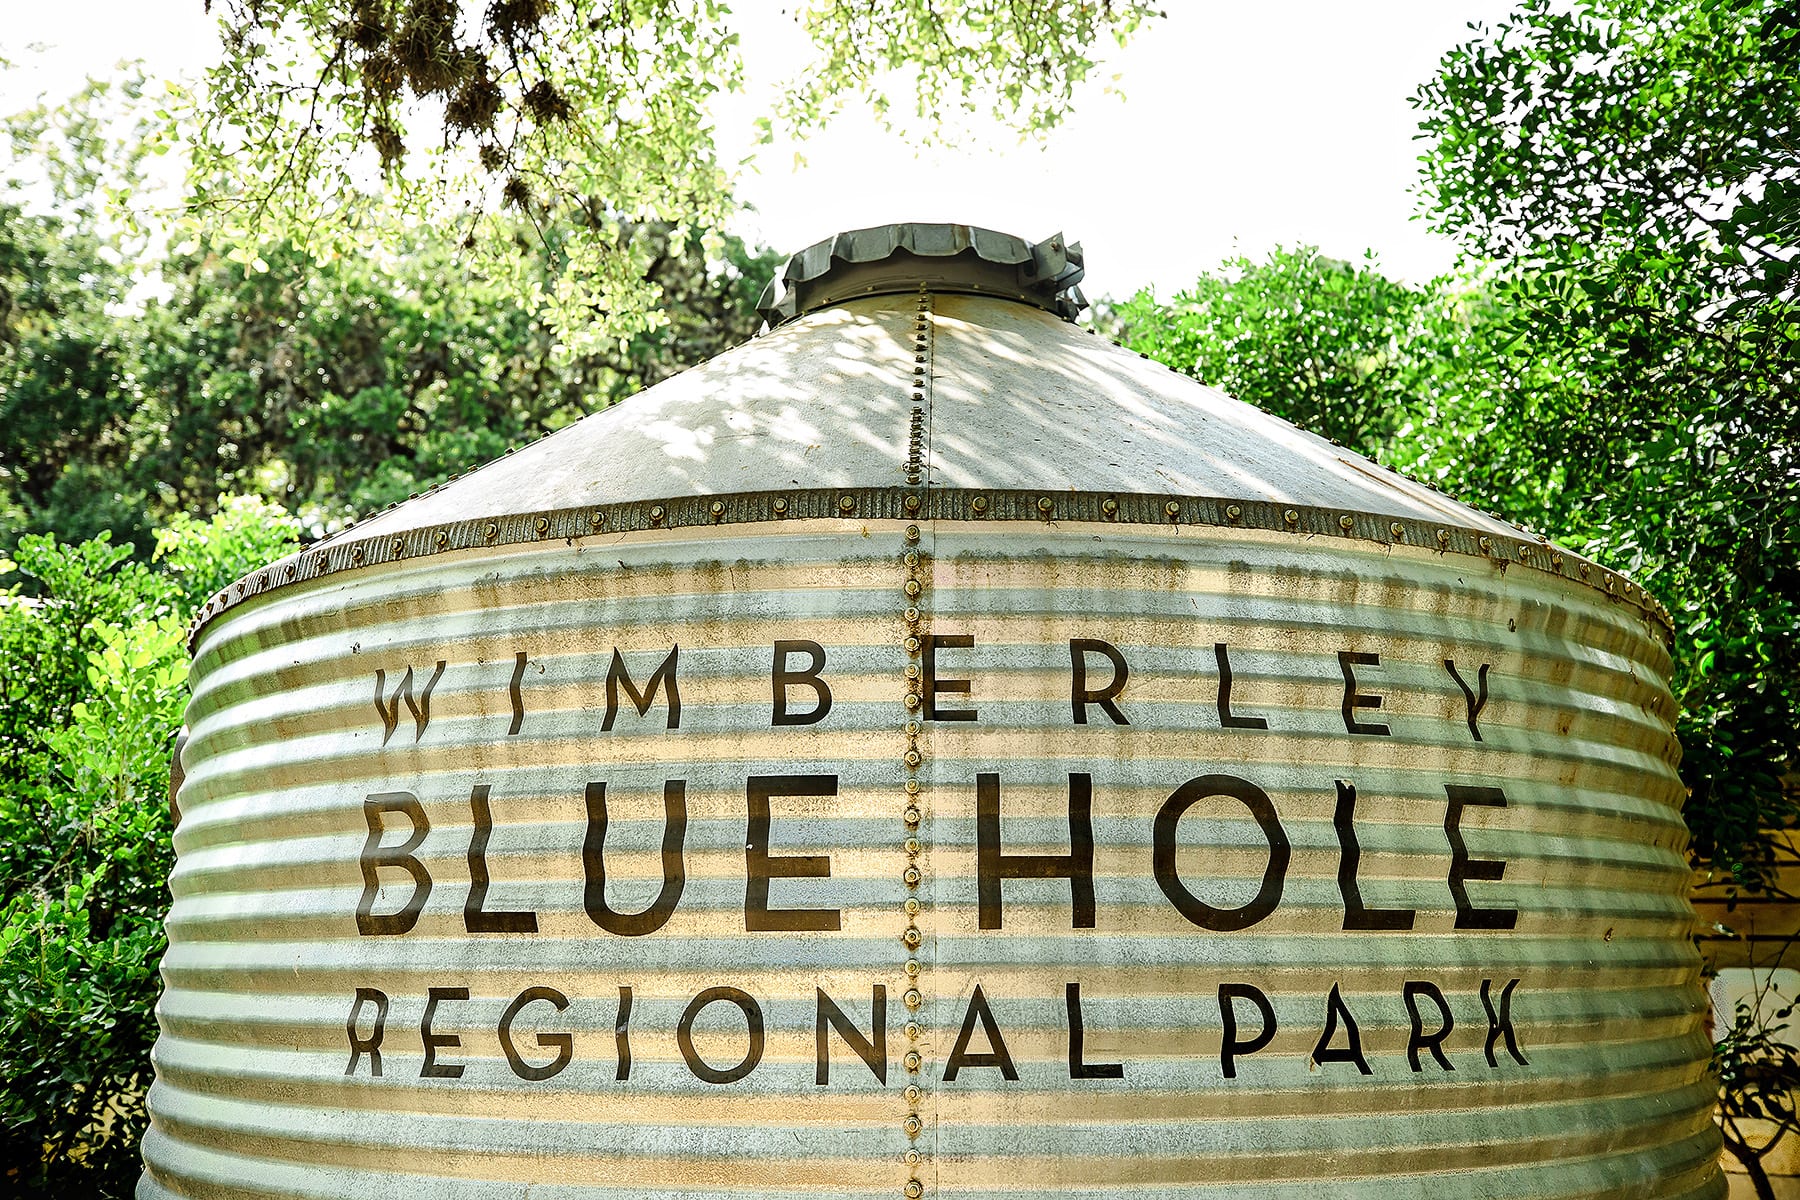 Blue Hole Wimberley, Texas